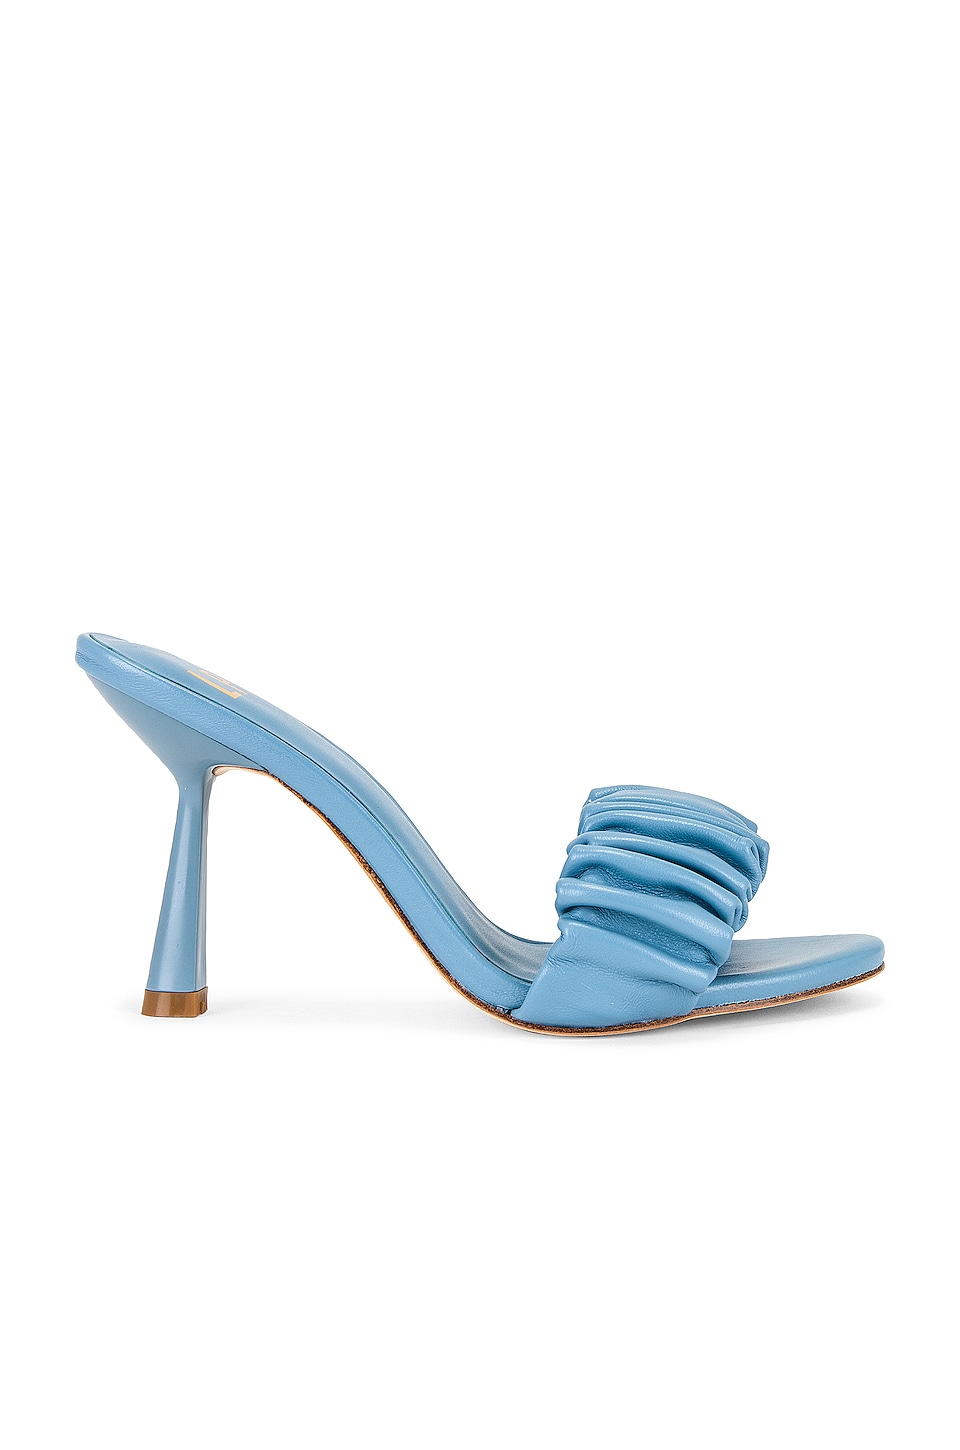 LPA Augstine Heel in Baby Blue | REVOLVE